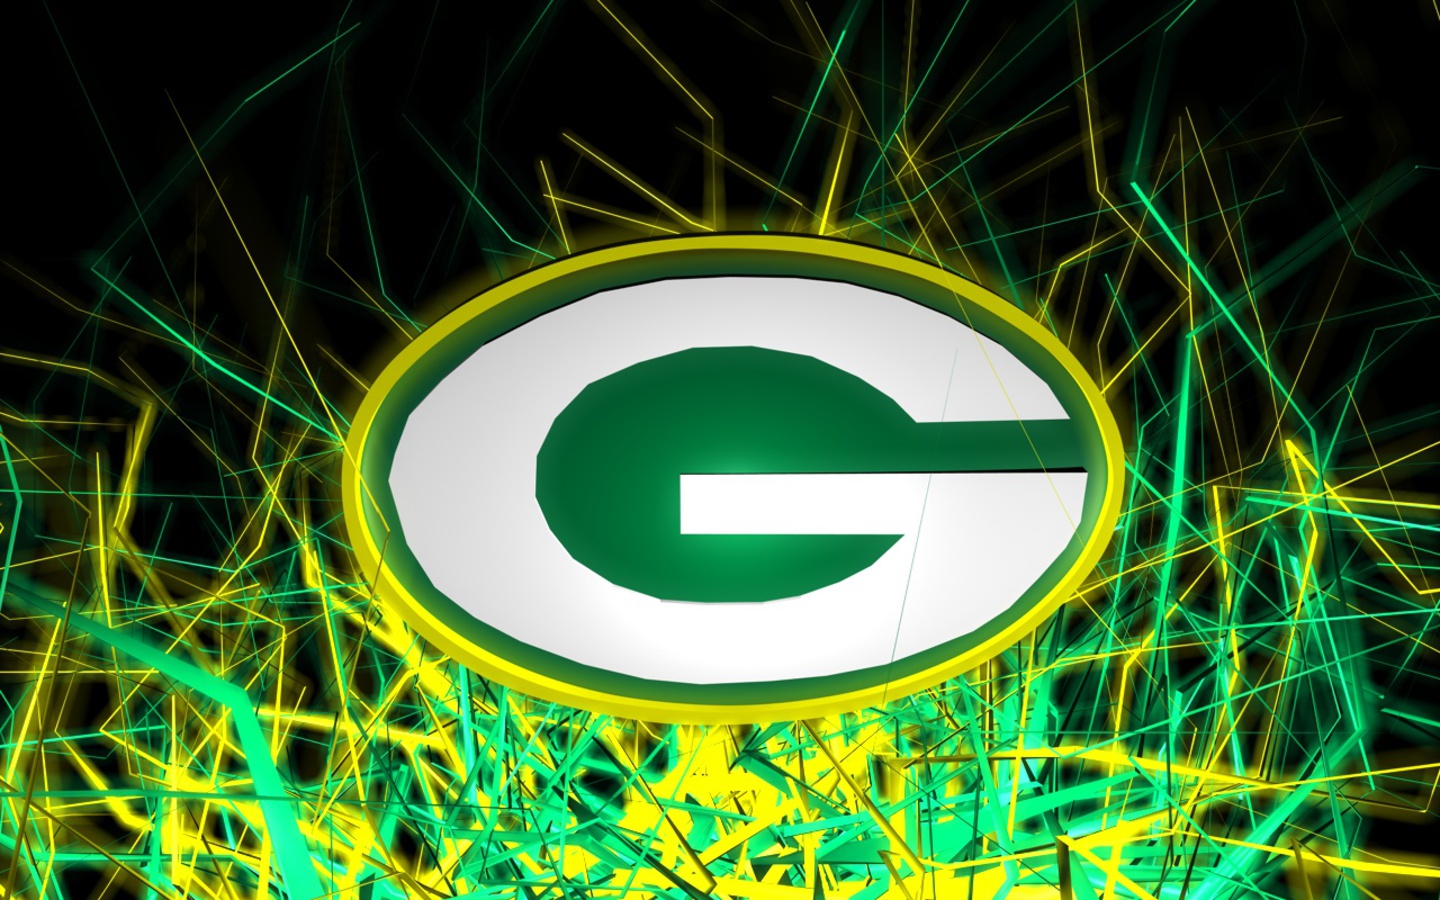 46+] Green Bay Packers Images Wallpaper Logo - WallpaperSafari